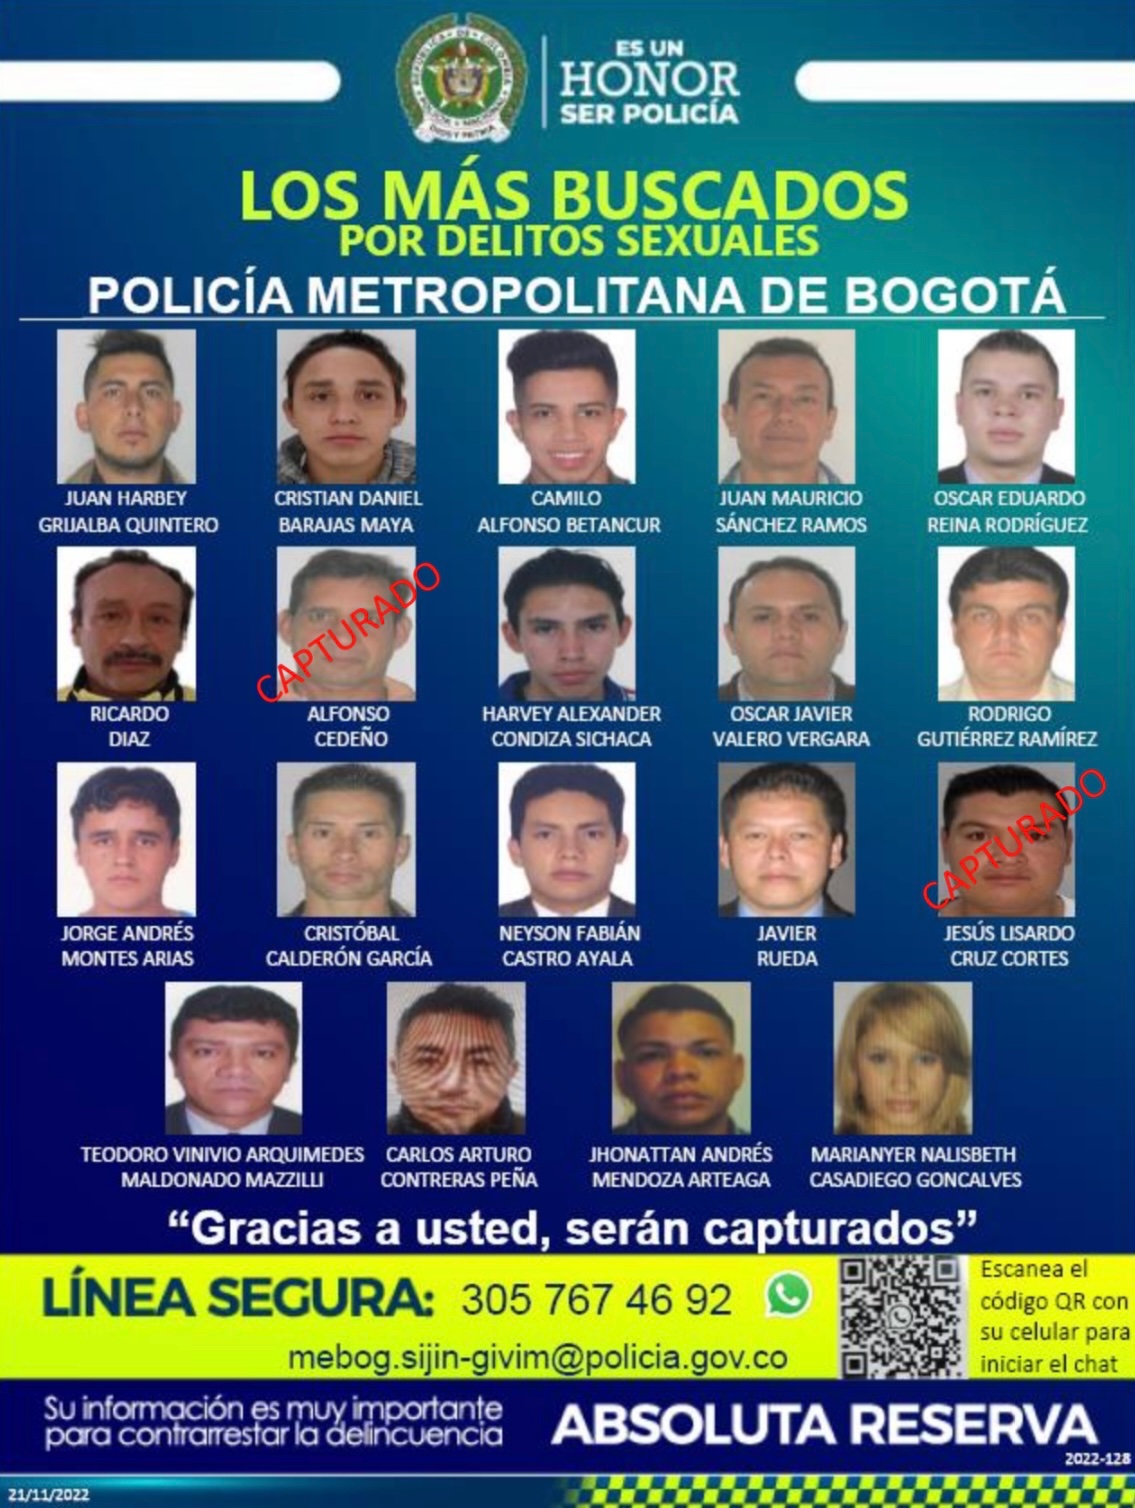 La Policía Metropolitana detalló las personas más buscadas en tema de delitos sexuales. 
Cortesía: Secretaría de Seguridad.